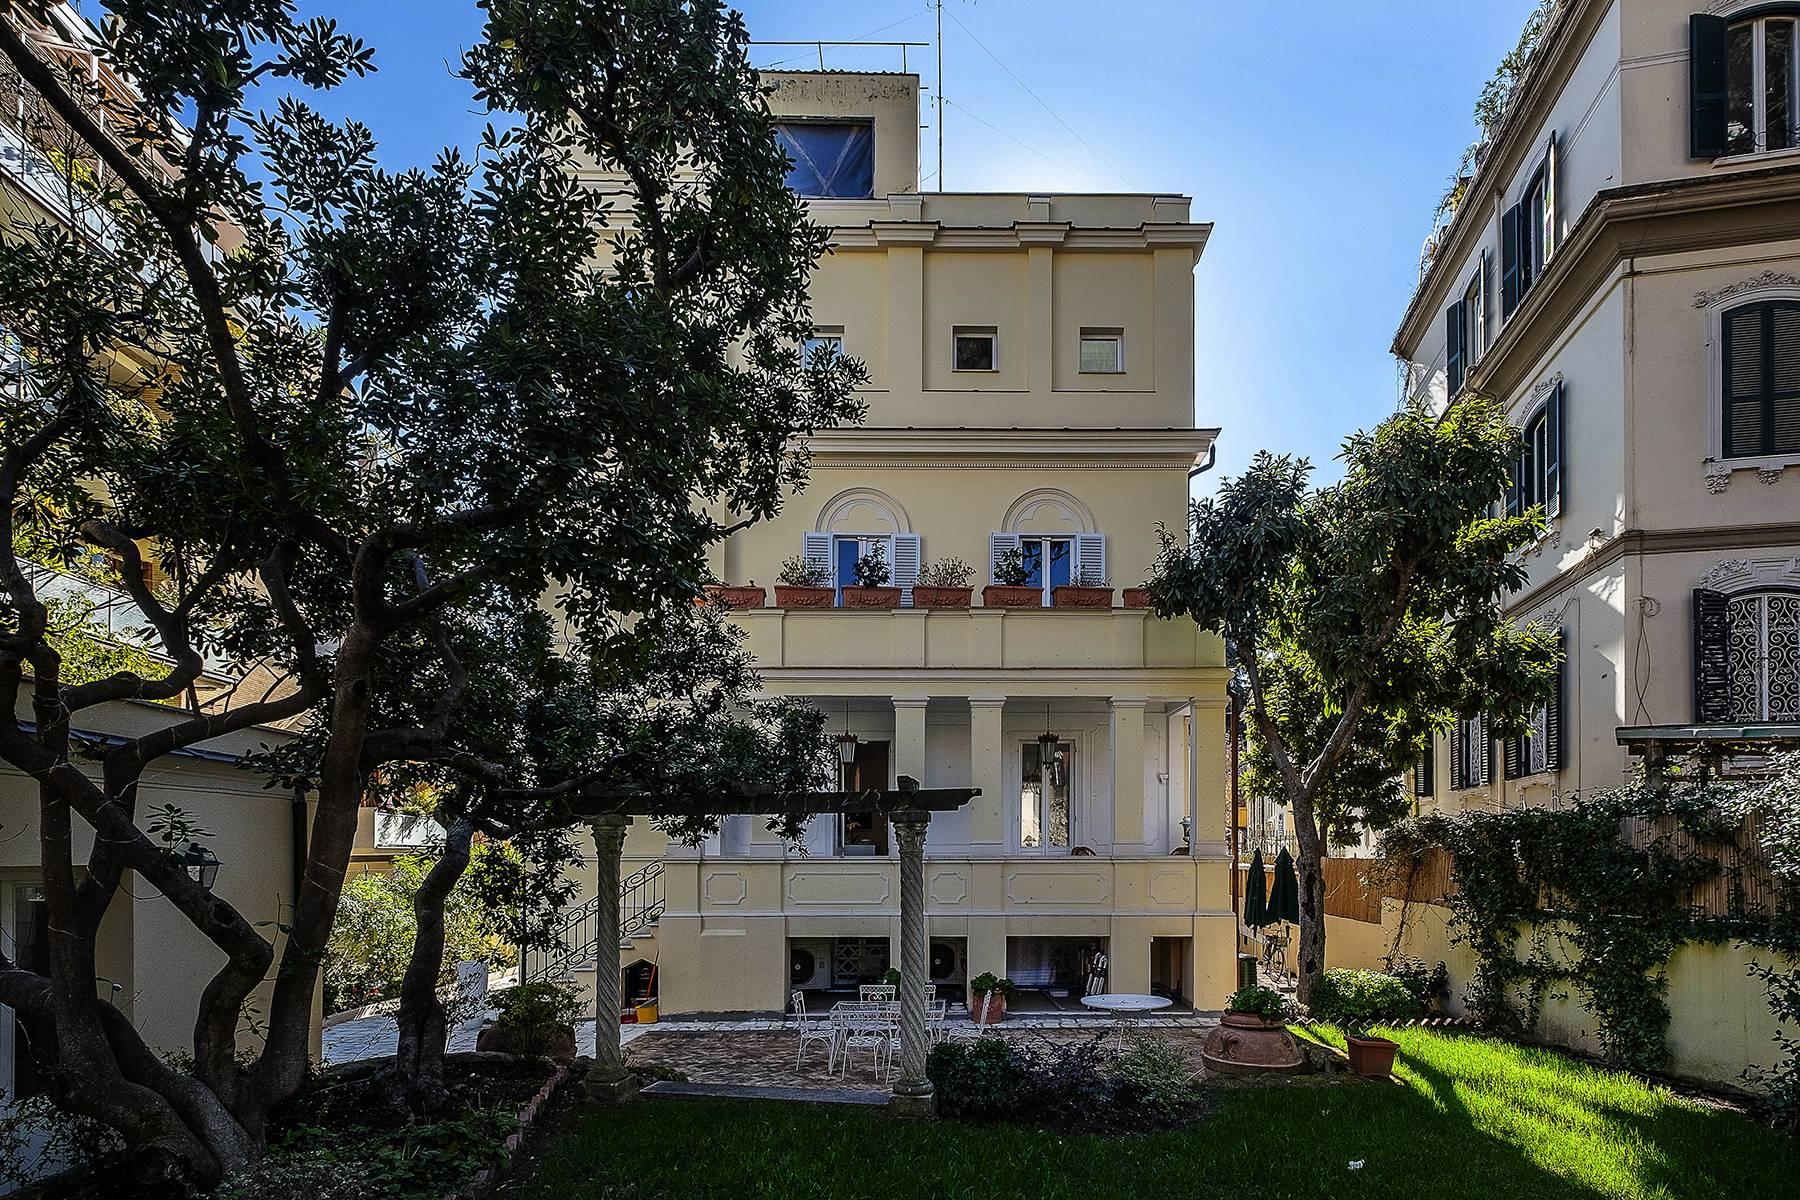 Villa ristrutturata con giardino e dependence nel quartiere Trieste/Coppedè - 2